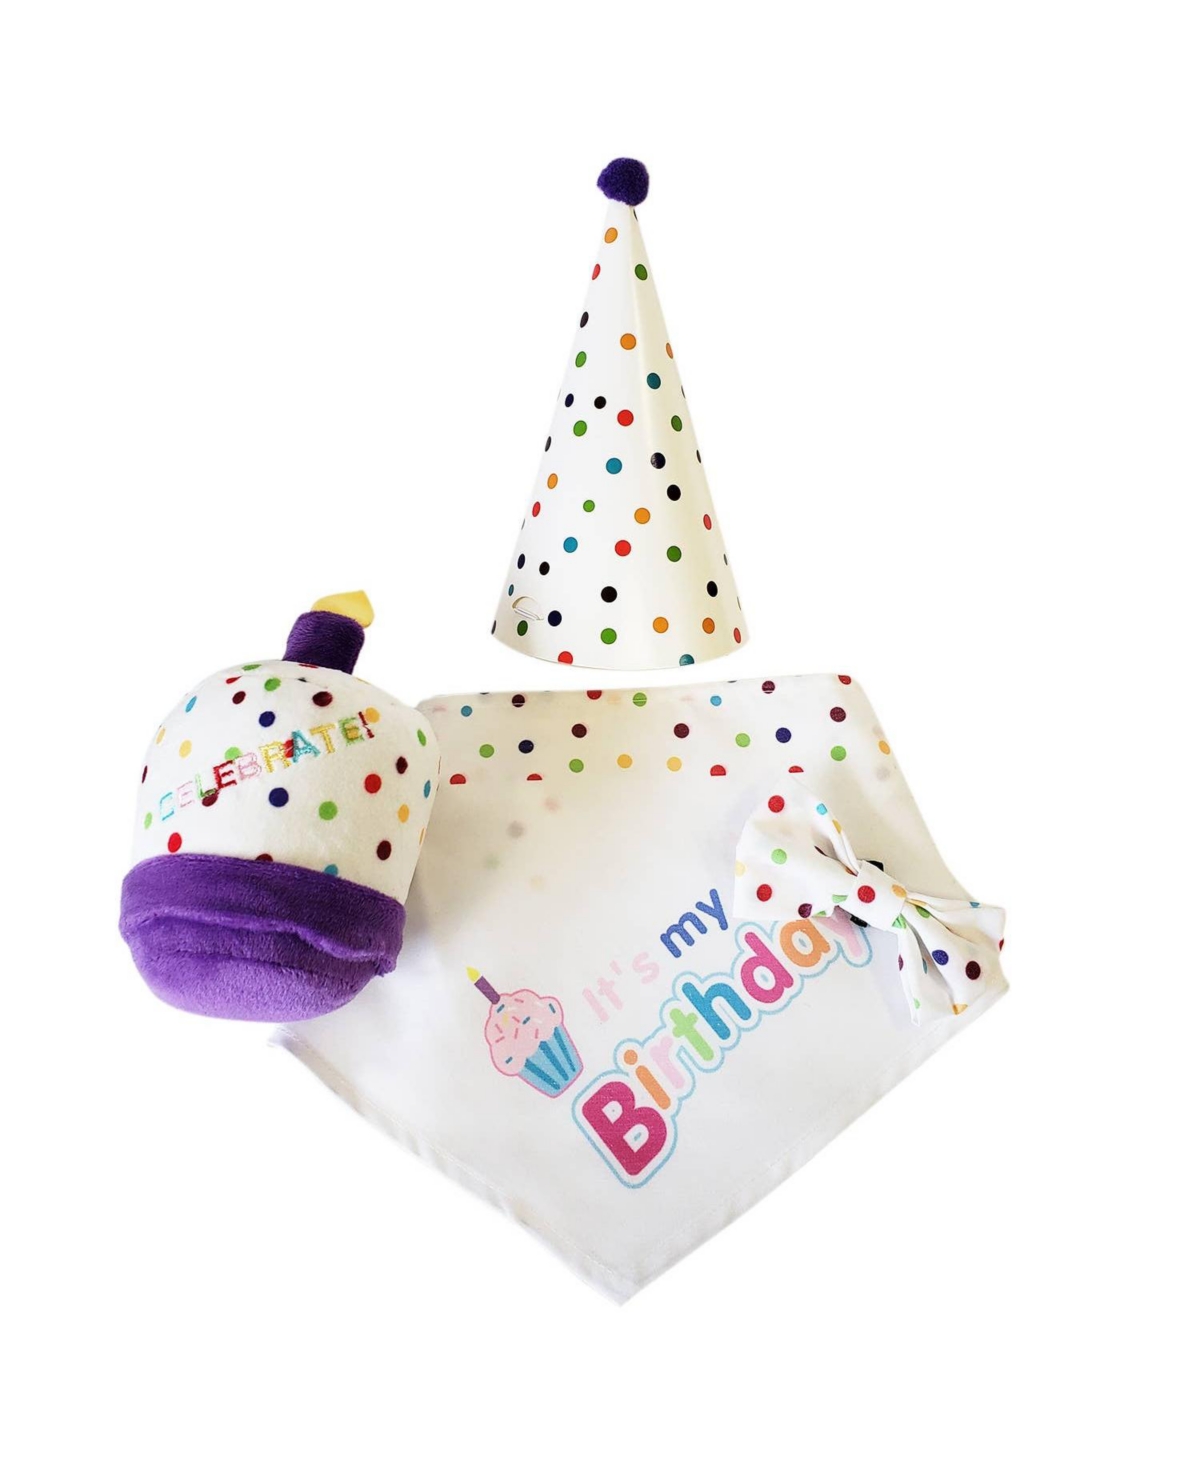 4-piece Dog Birthday Kit: Bandana, Hat, Bow Tie, Plush Toy - Open Miscellaneous